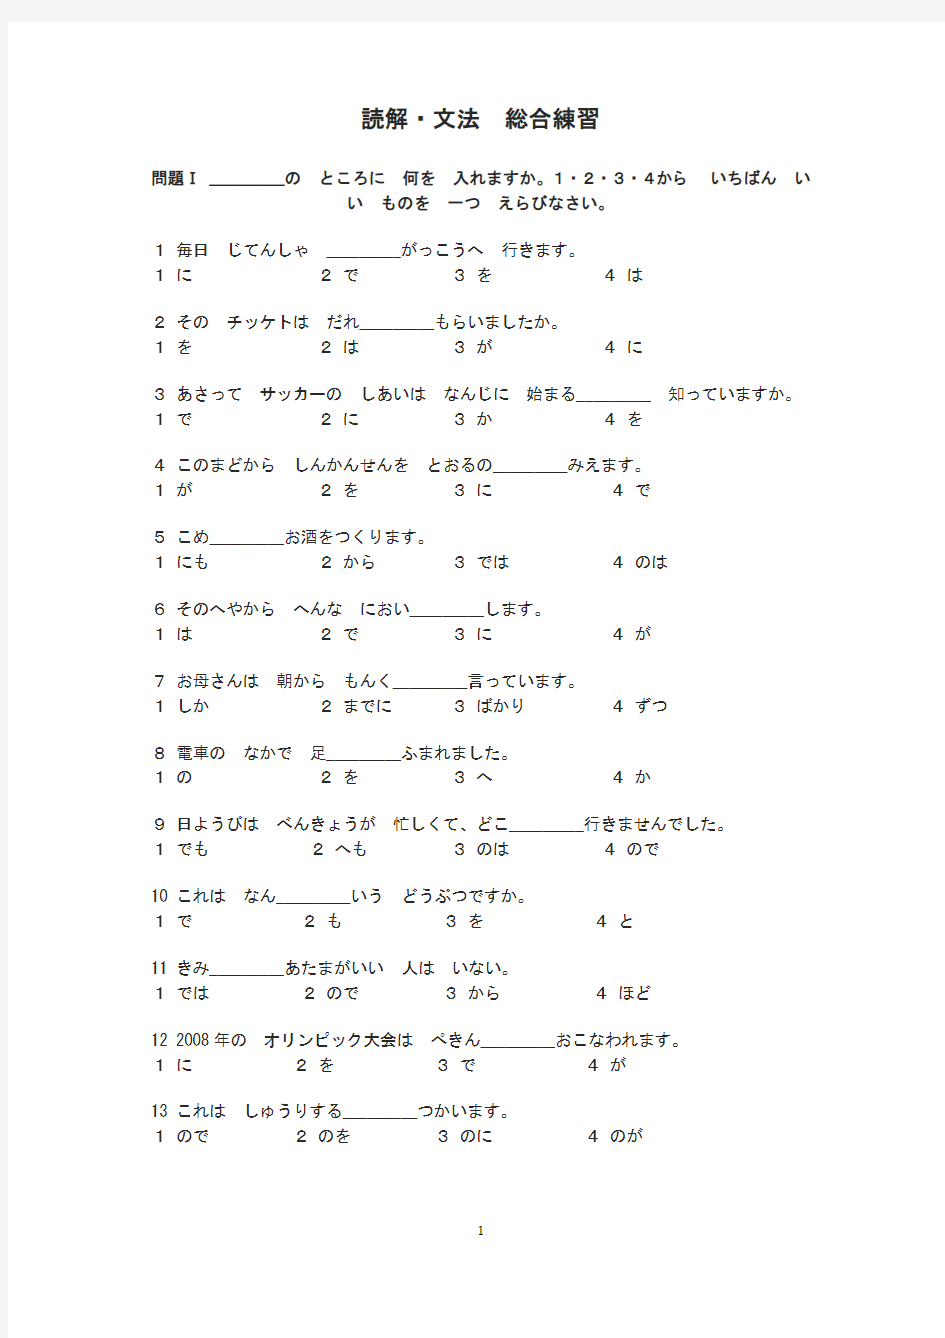 日语基础语法练习 (3)